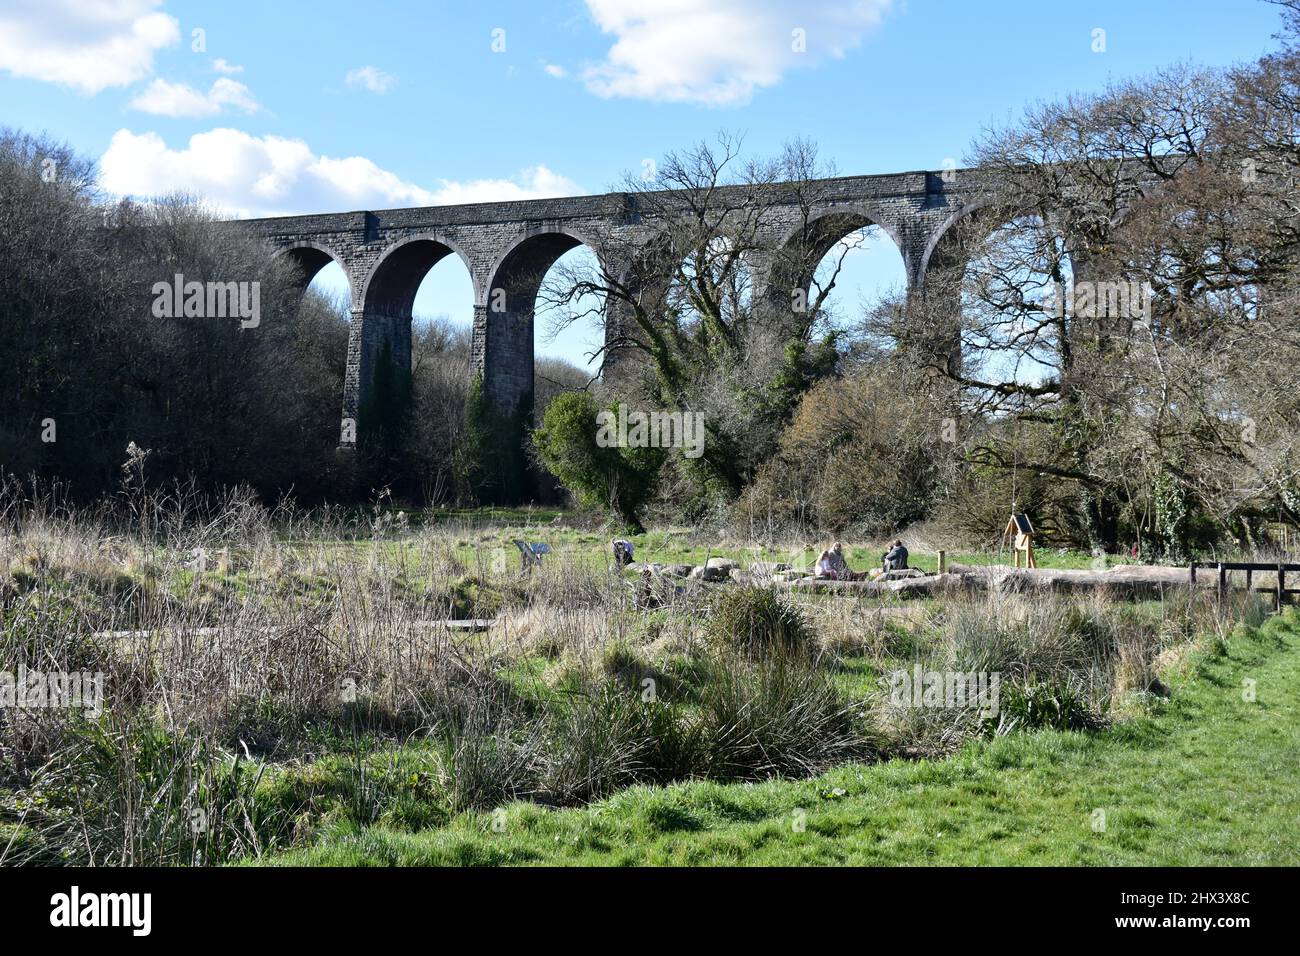 Viaducto de Porthkerry, país de Porthkerry, Barry, Glamourgan, Gales Foto de stock